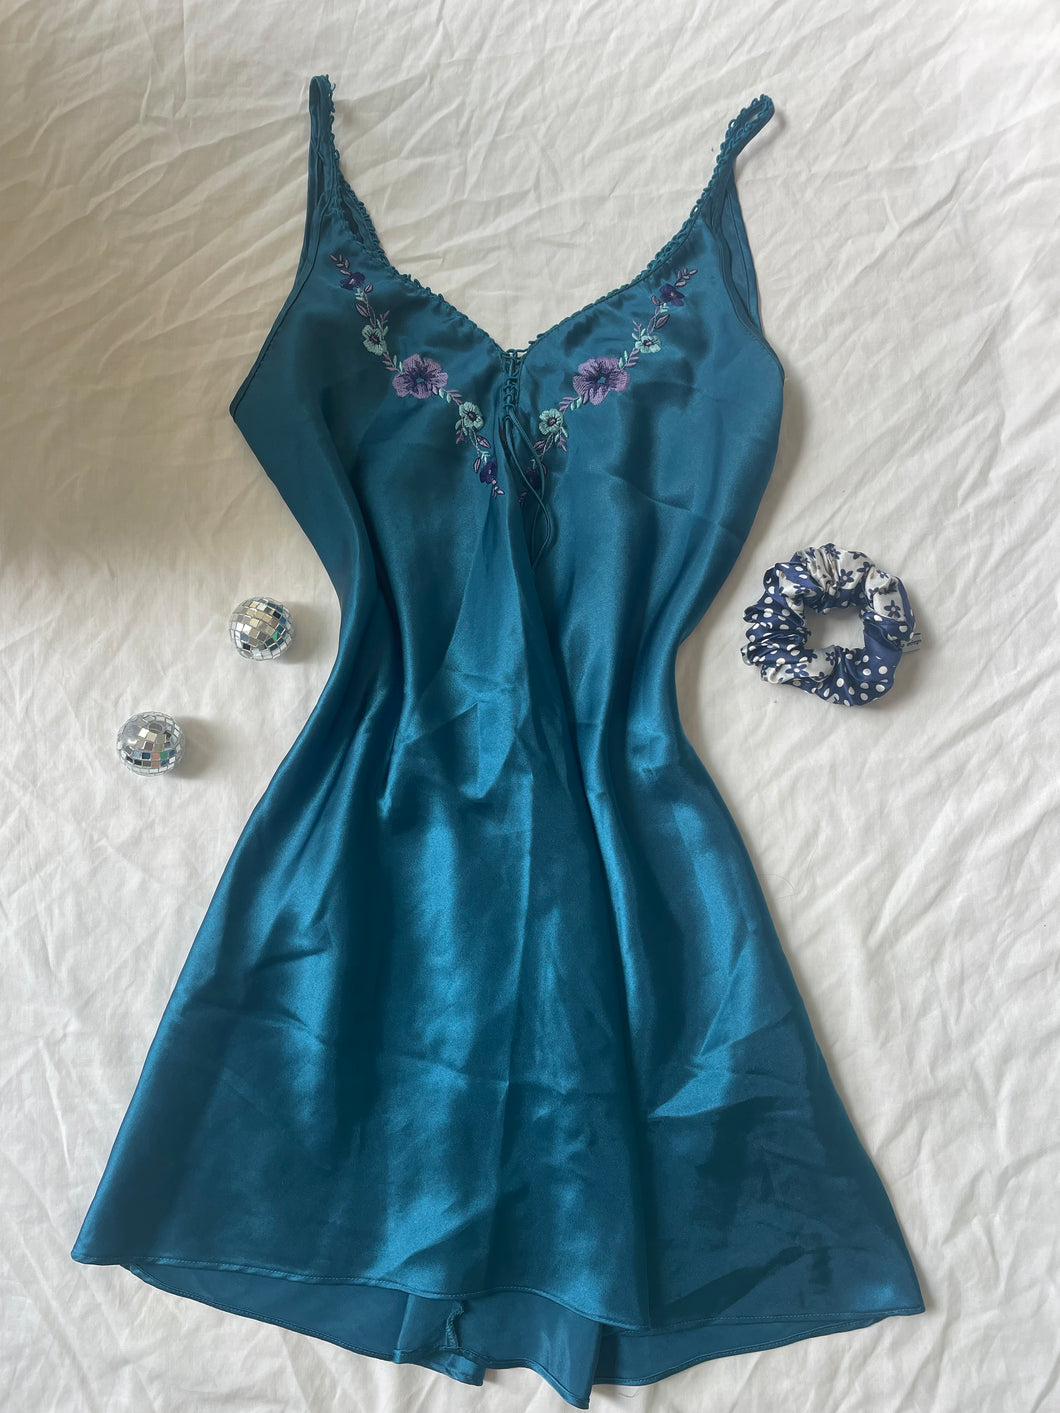 Soft blue florals dress